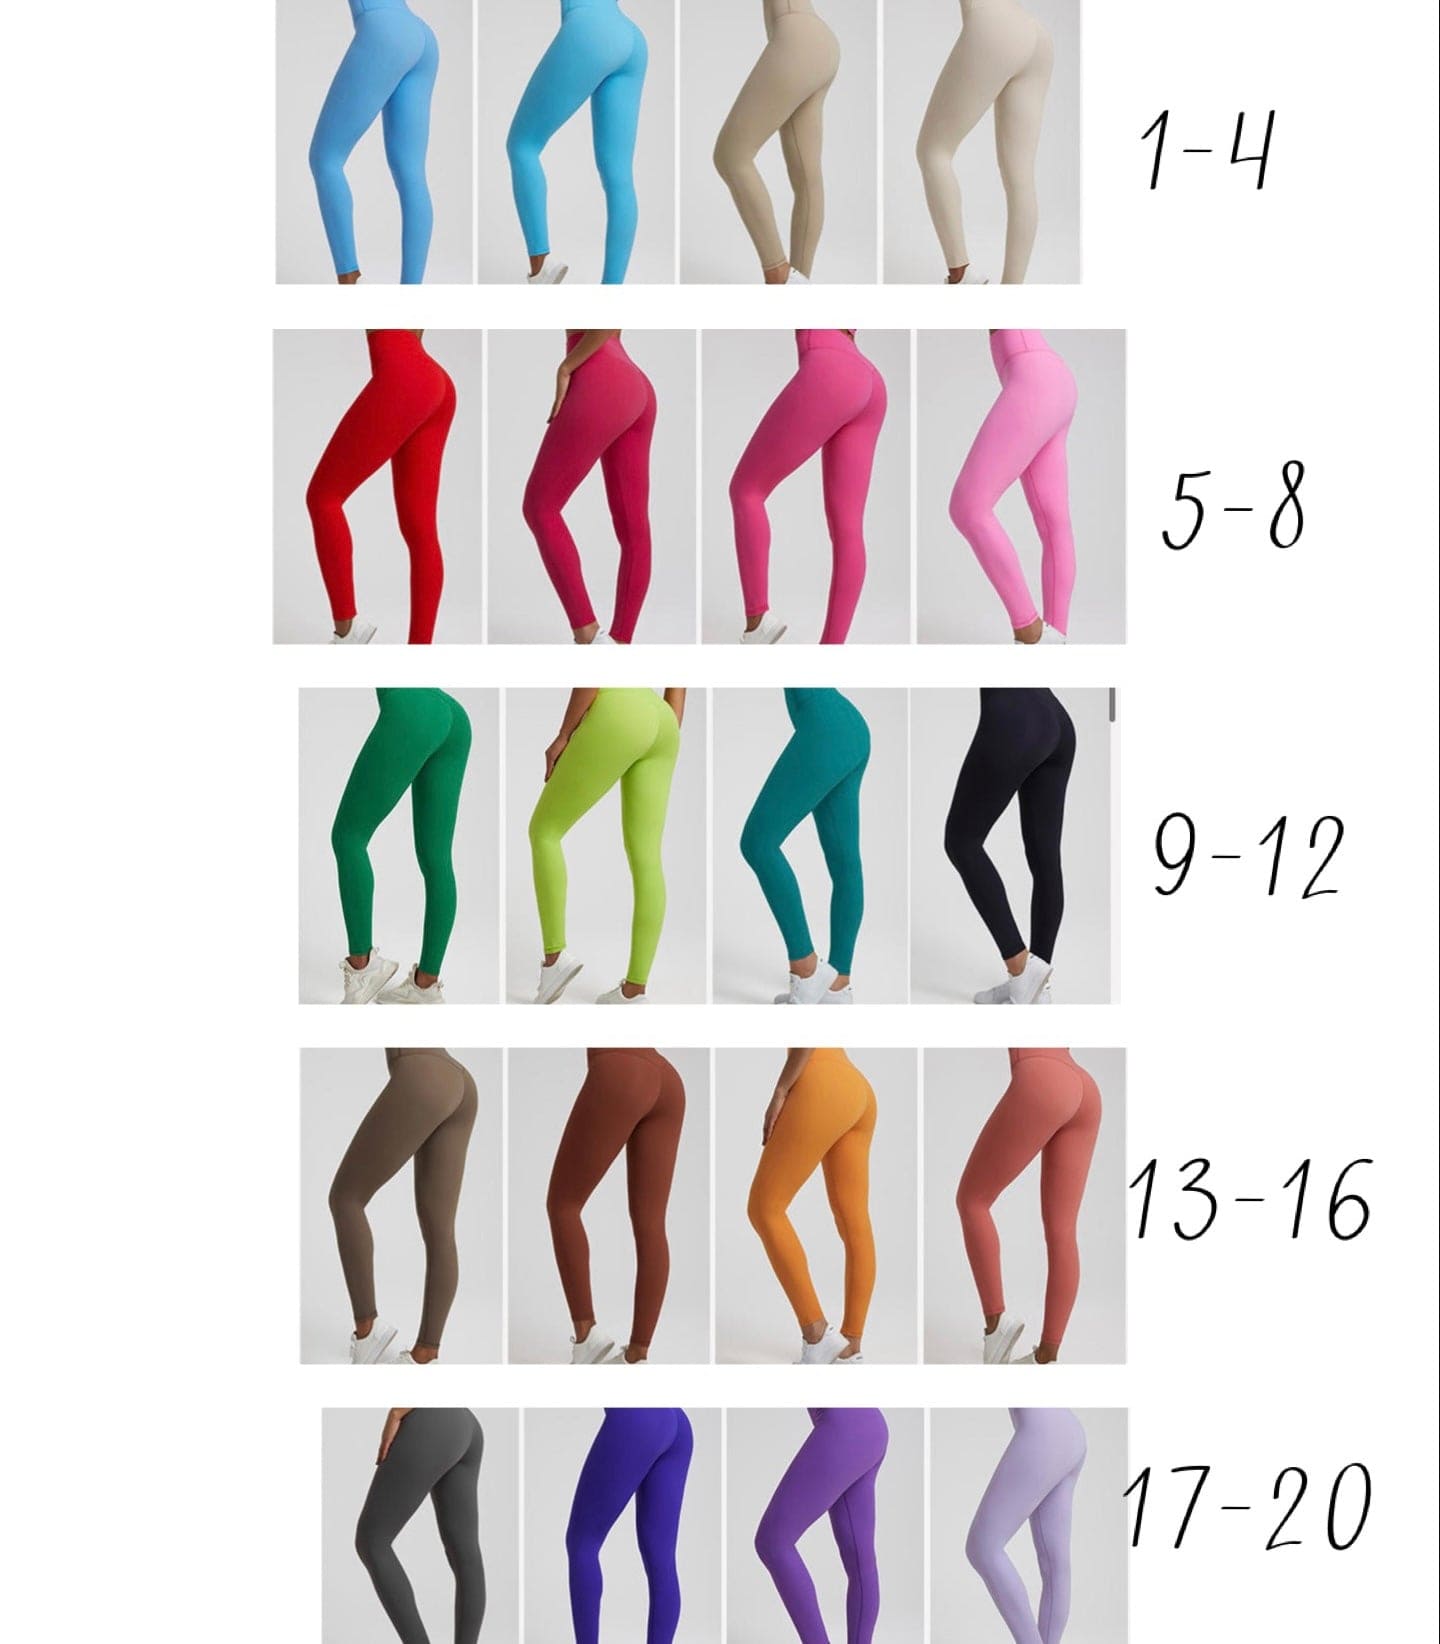 Elite seamless leggings (colour 11-20) 24.5 inch inseam